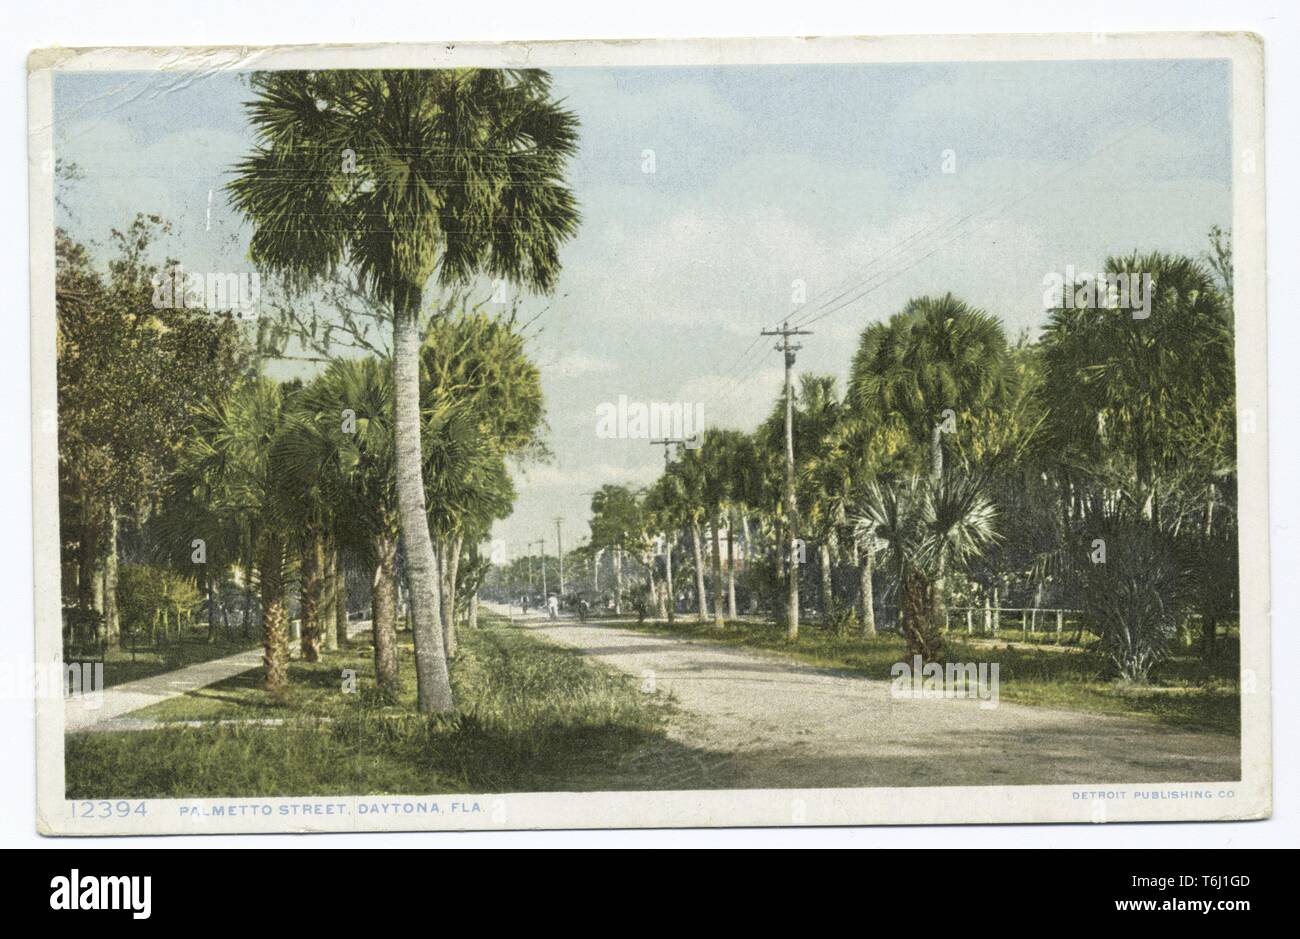 Detroit Publishing Company vintage cartolina di Palmetto Street a Daytona Beach, Florida, 1914. Dalla Biblioteca Pubblica di New York. () Foto Stock